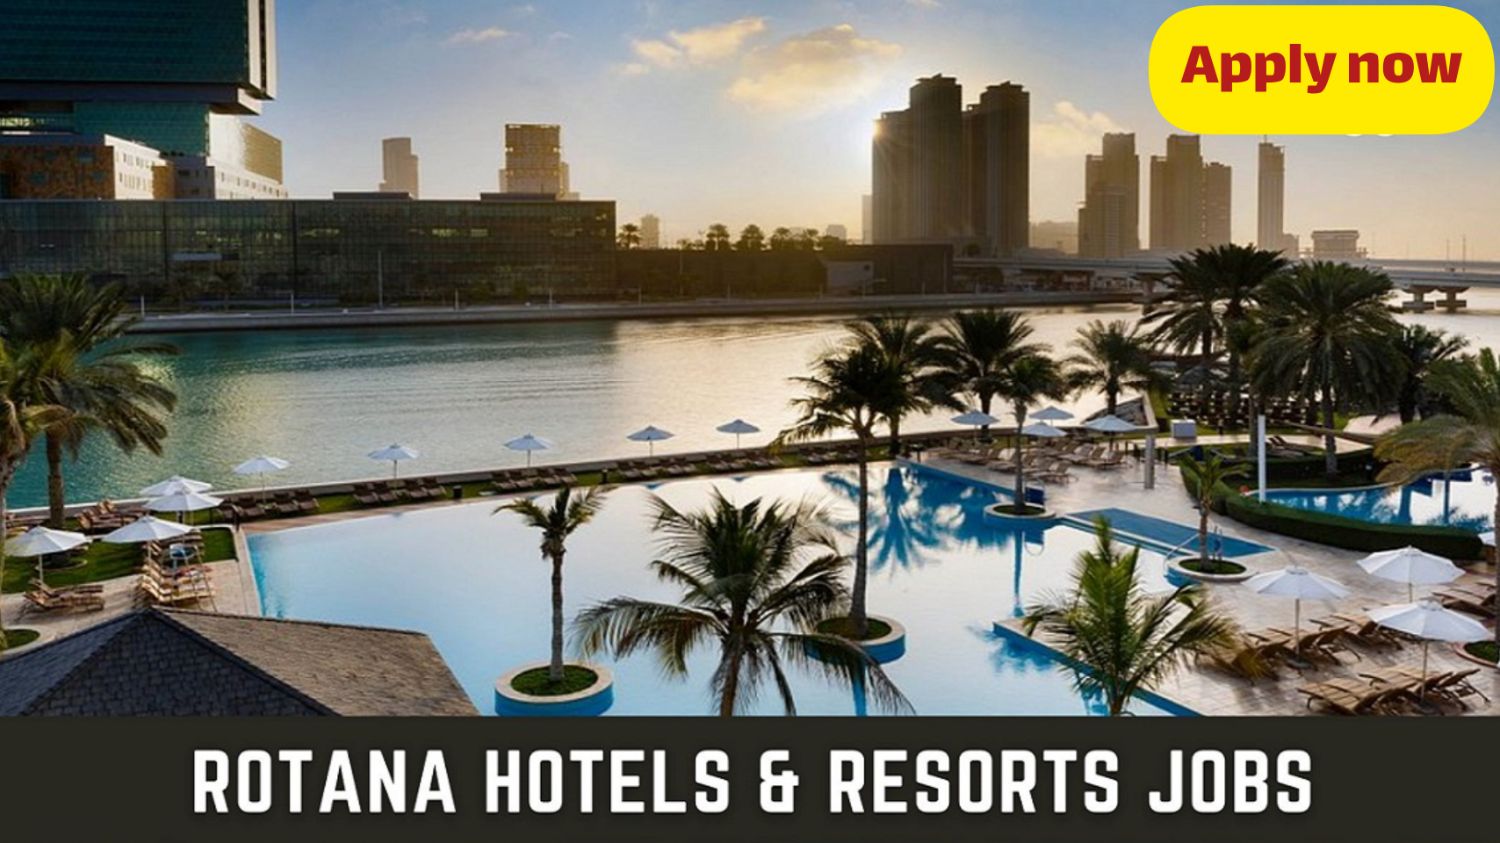 فرصة عمل بتأشيرة مجانية .. إلحق أرقى وظائف فنادق روتانا قطر للرجال والنساء من أي جنسية